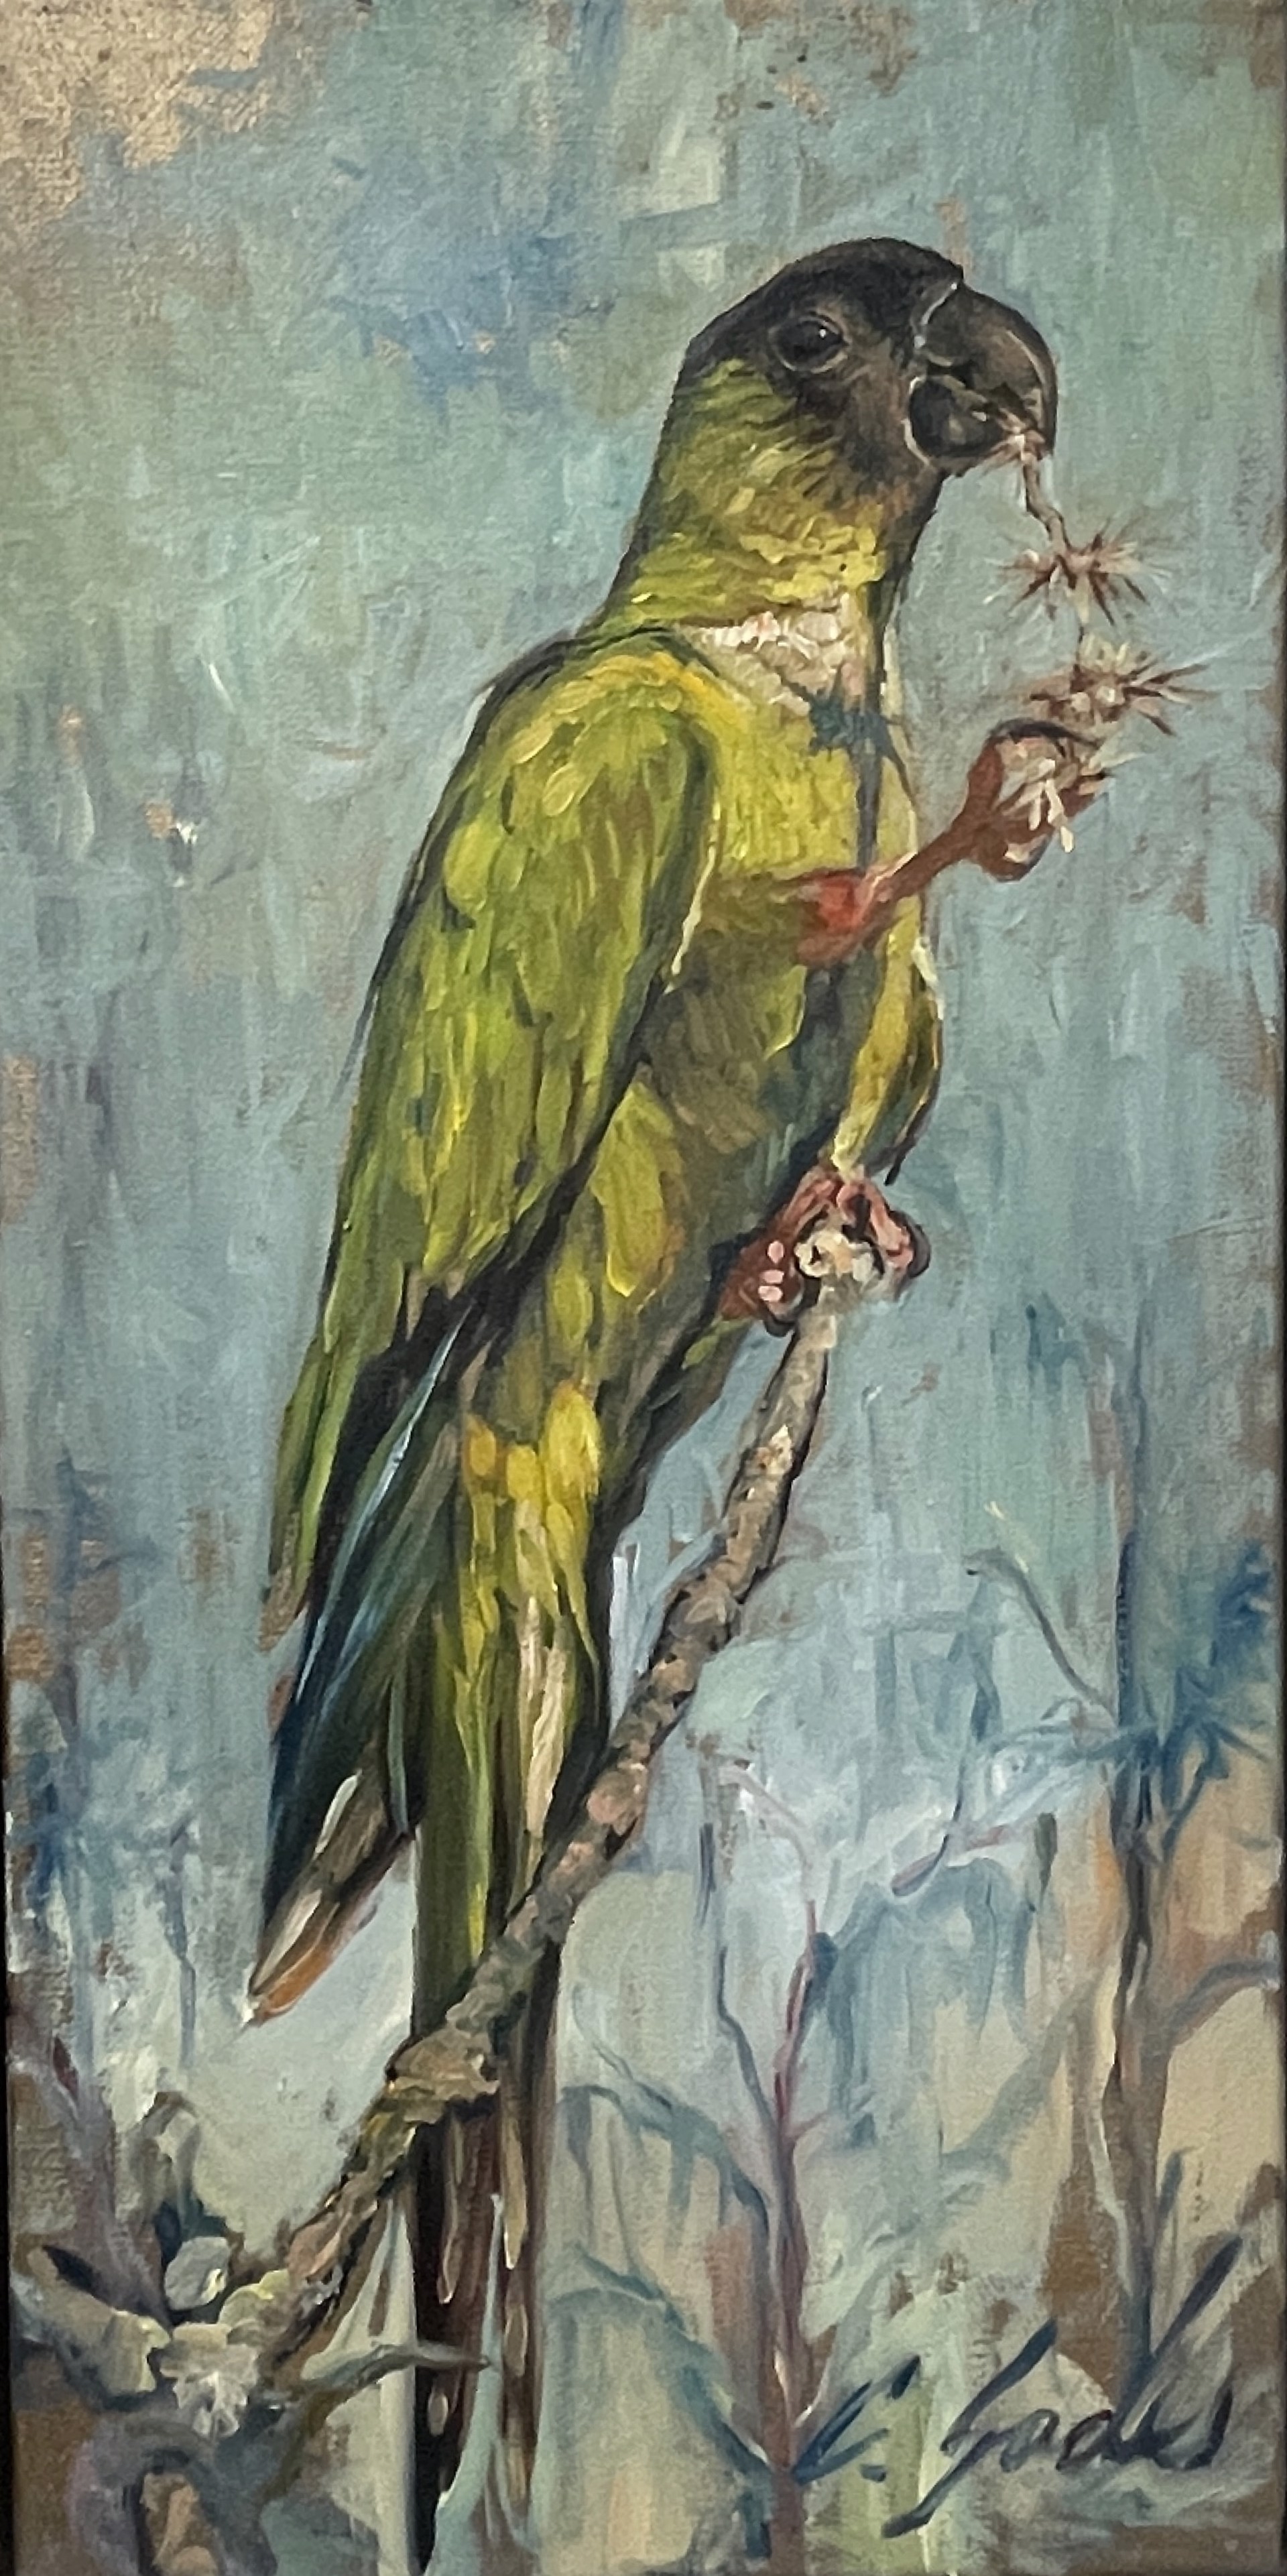 Wild Green Parrot by Carrie Jadus